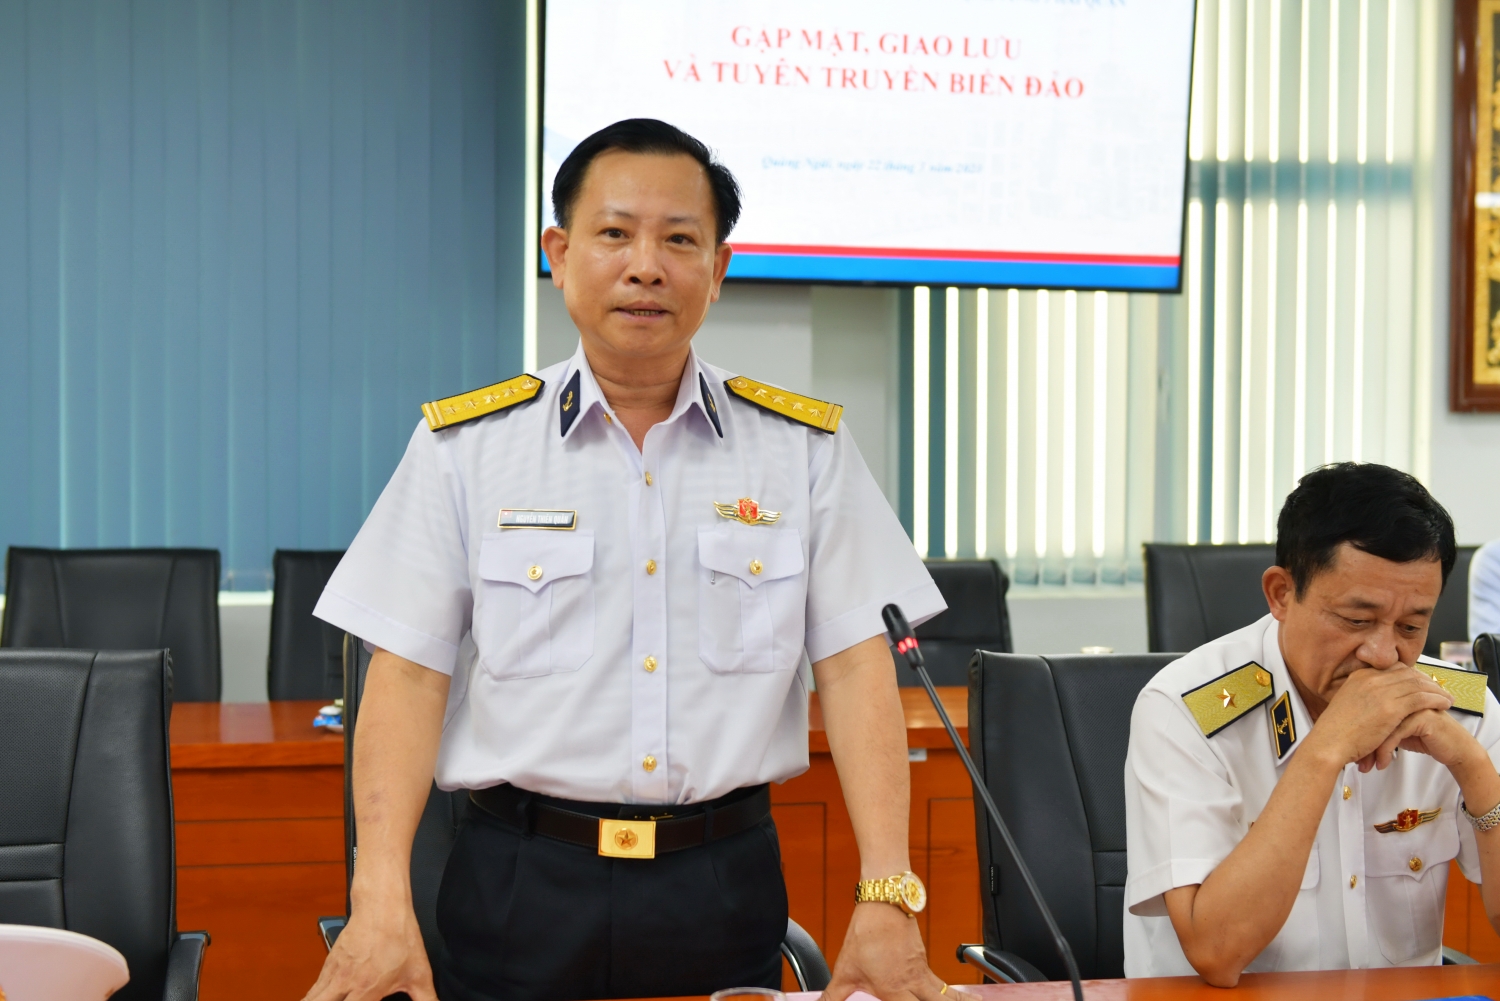 Bộ Tư lệnh Vùng 3 Hải quân tổ chức tuyên truyền về biển đảo cho CBCNV BSR